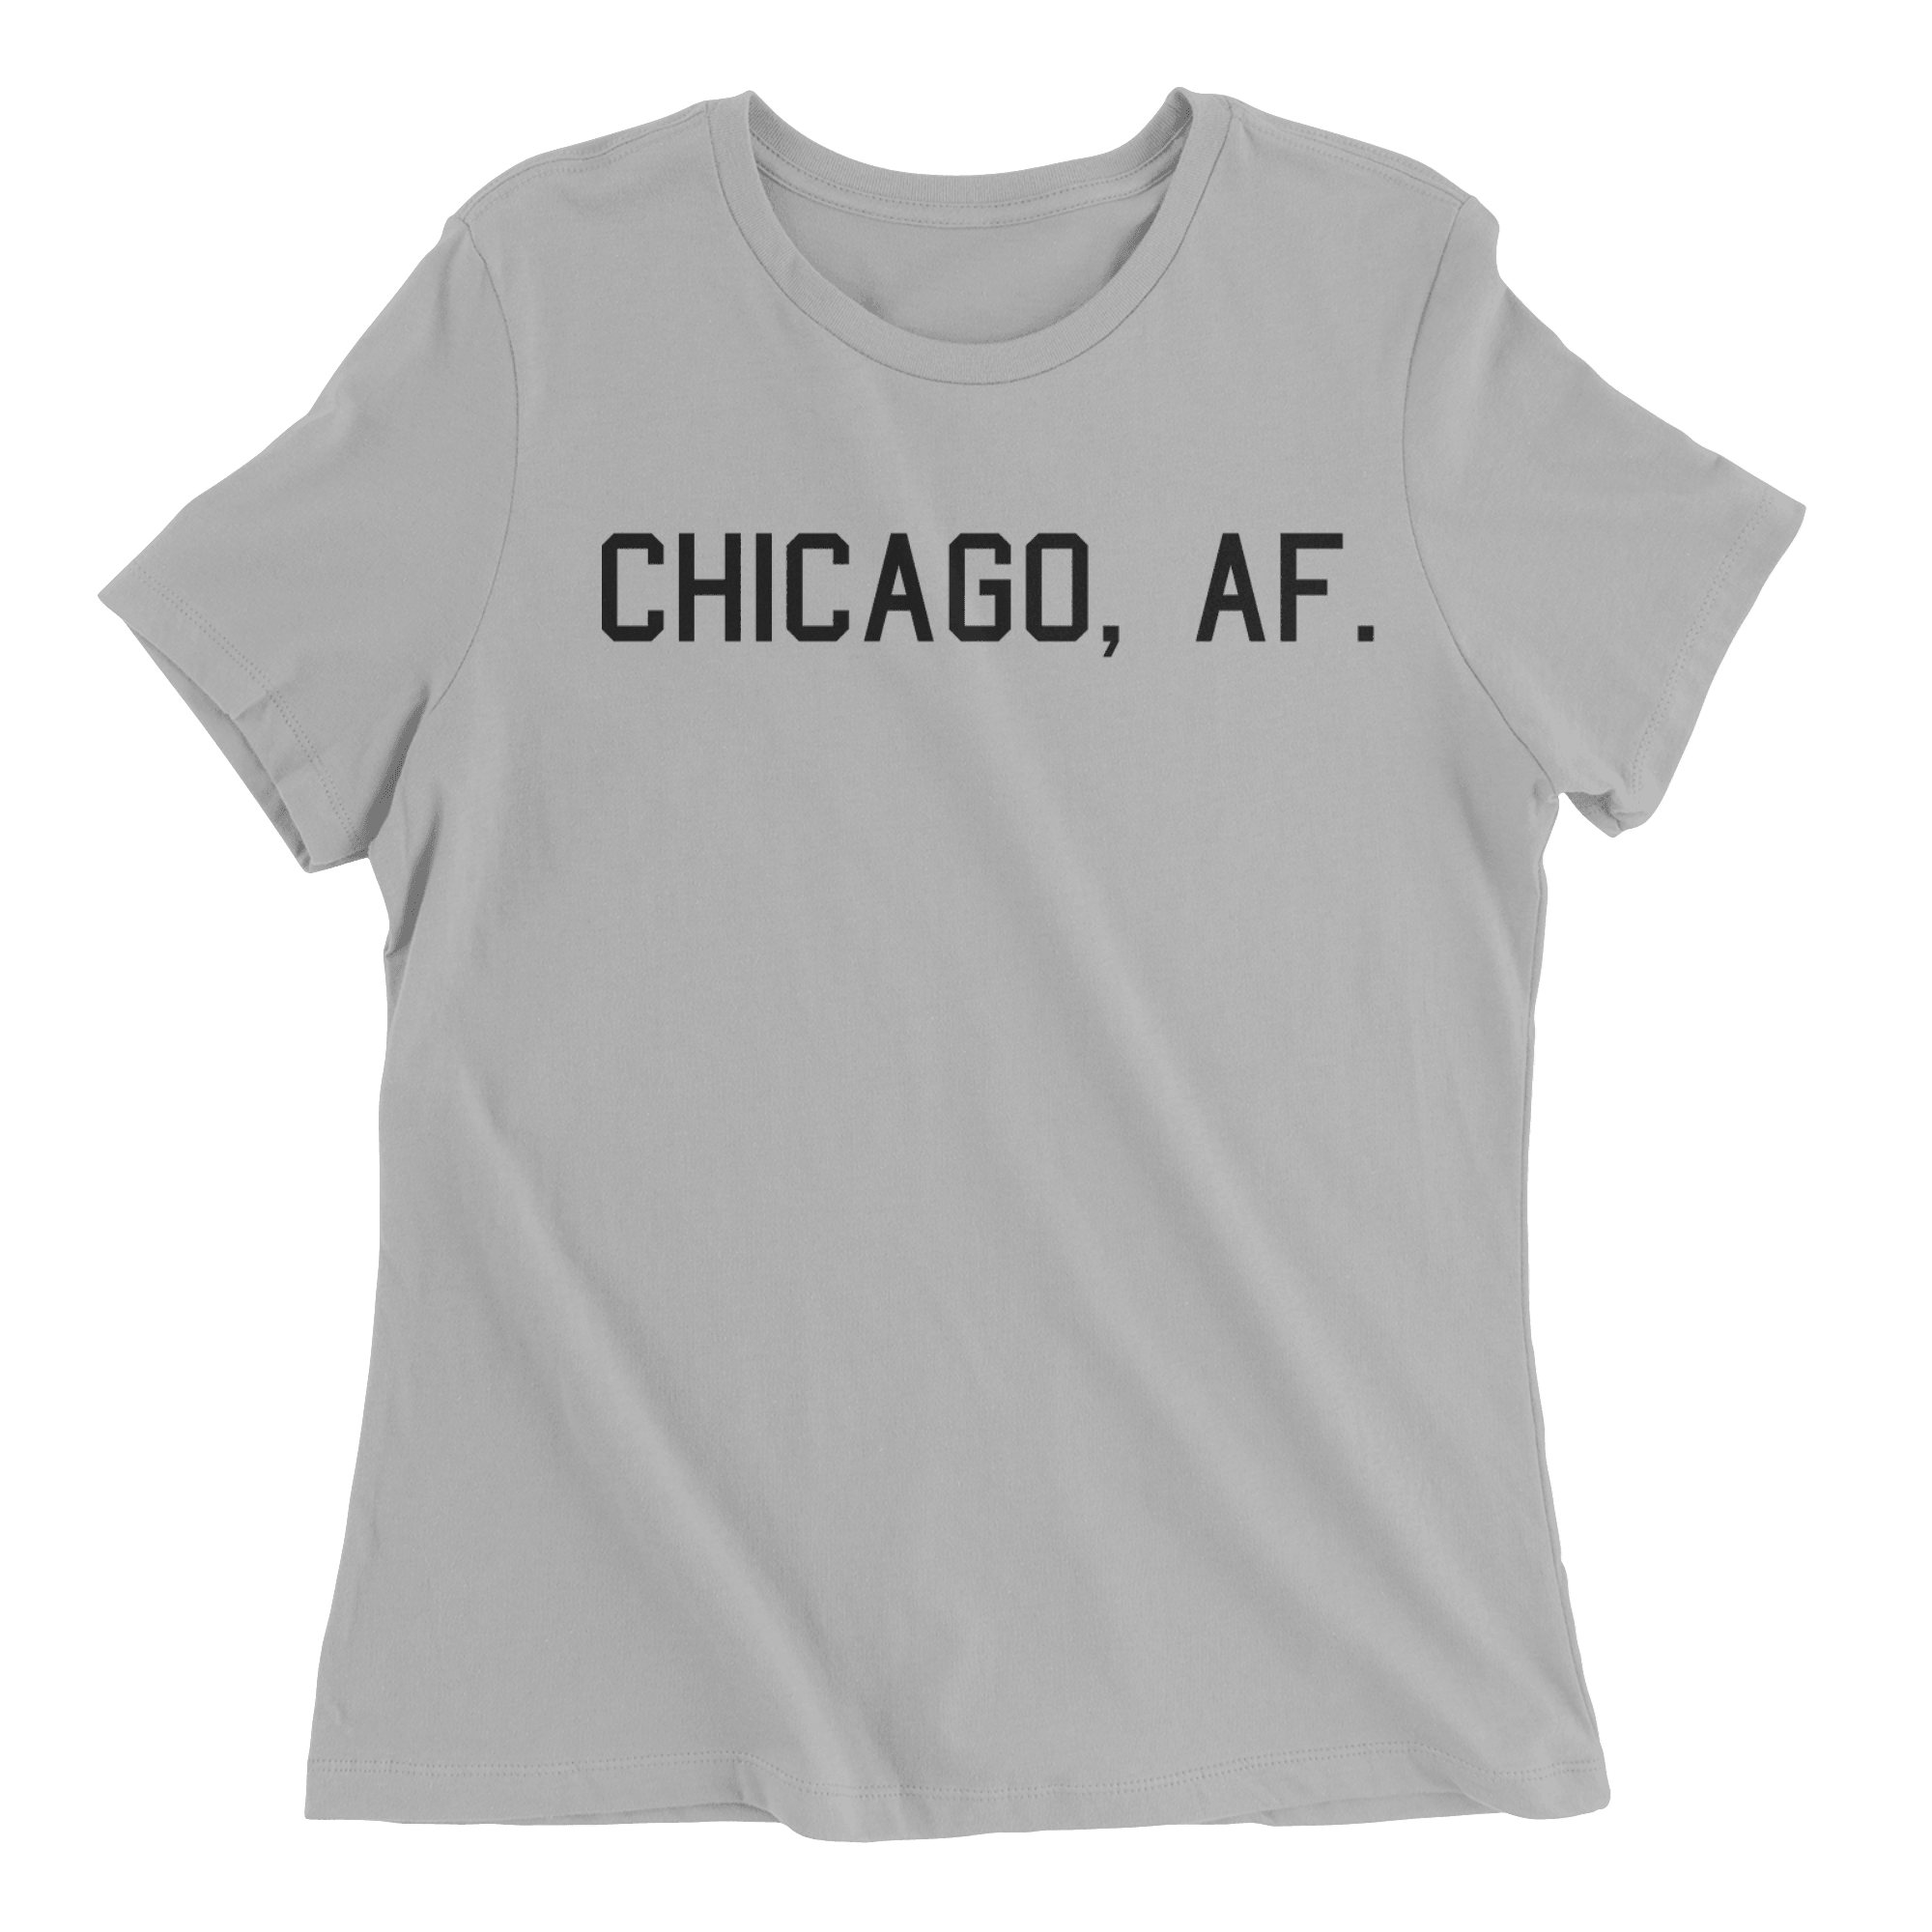 Chicago, AF. - The T-Shirt Deli, Co.